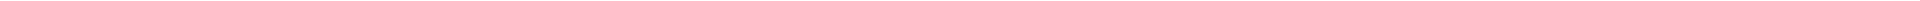 Лечение кариеса зубов - цены в Астане, Алматы, Атырау, Усть-Каменогорск, Уральск, Кокшетау в Казахстане, фото 23